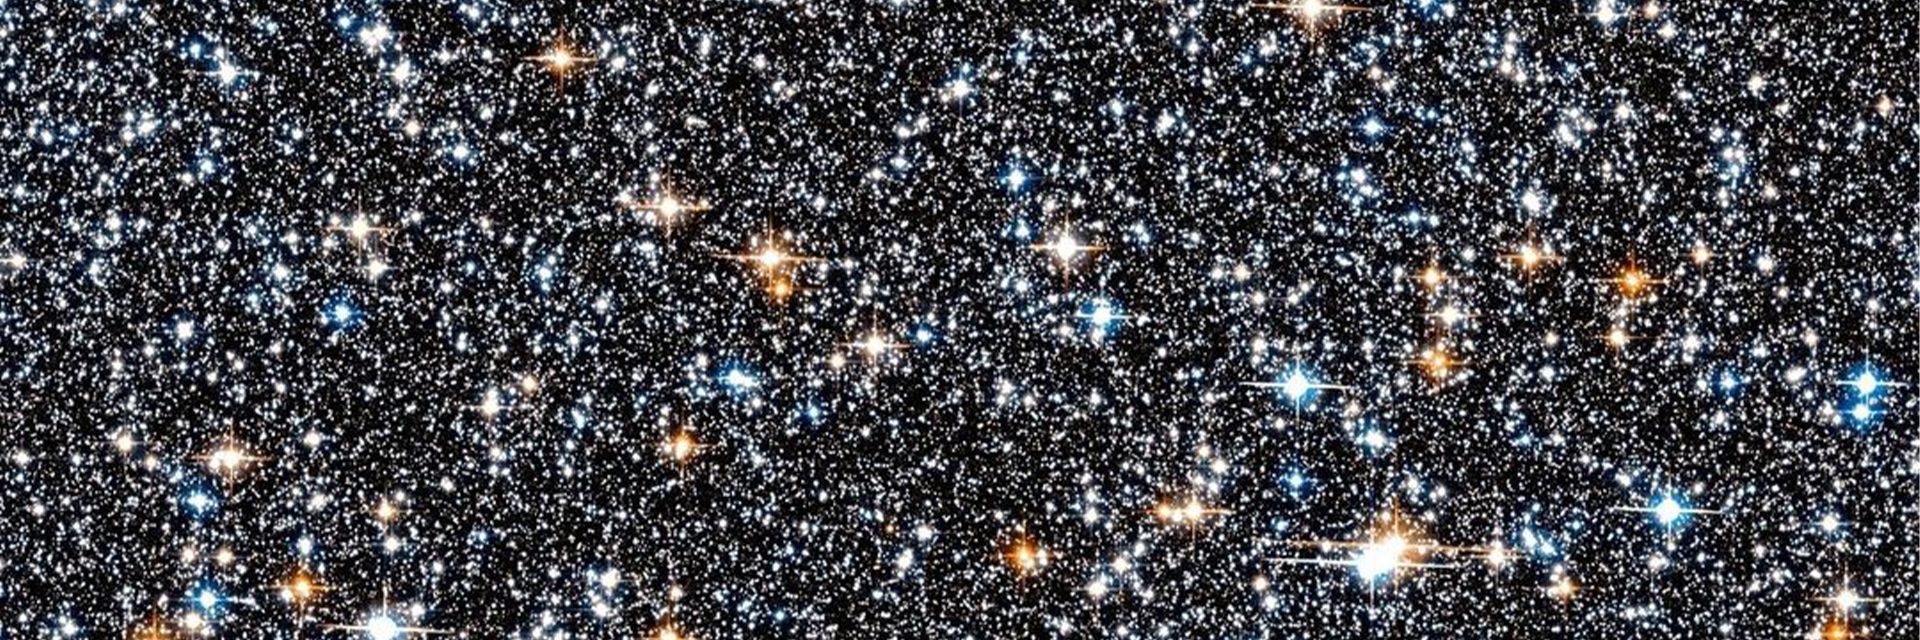 La poignée officielle de la Nasa a partagé l'image d'une collection de ces monuments galactiques à 26,000 XNUMX années-lumière de la Terre, capturée par le télescope Hubble.